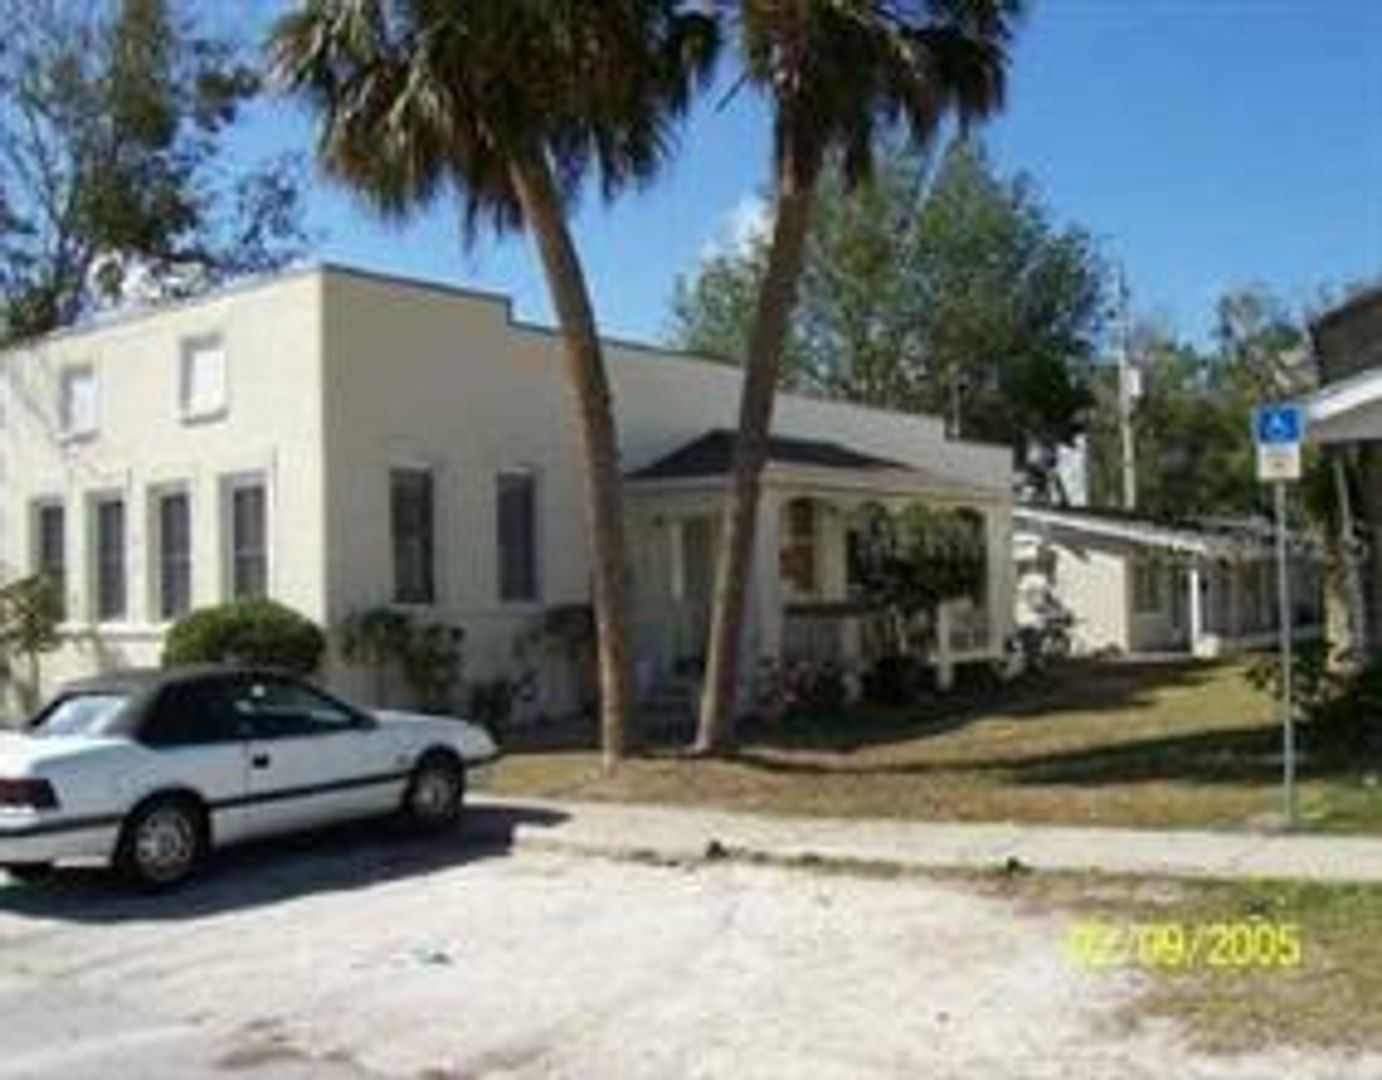 1 Bedroom 1 Bath Quadraplex For rent at 910 Florida Avenue #D St. Cloud FL 34769